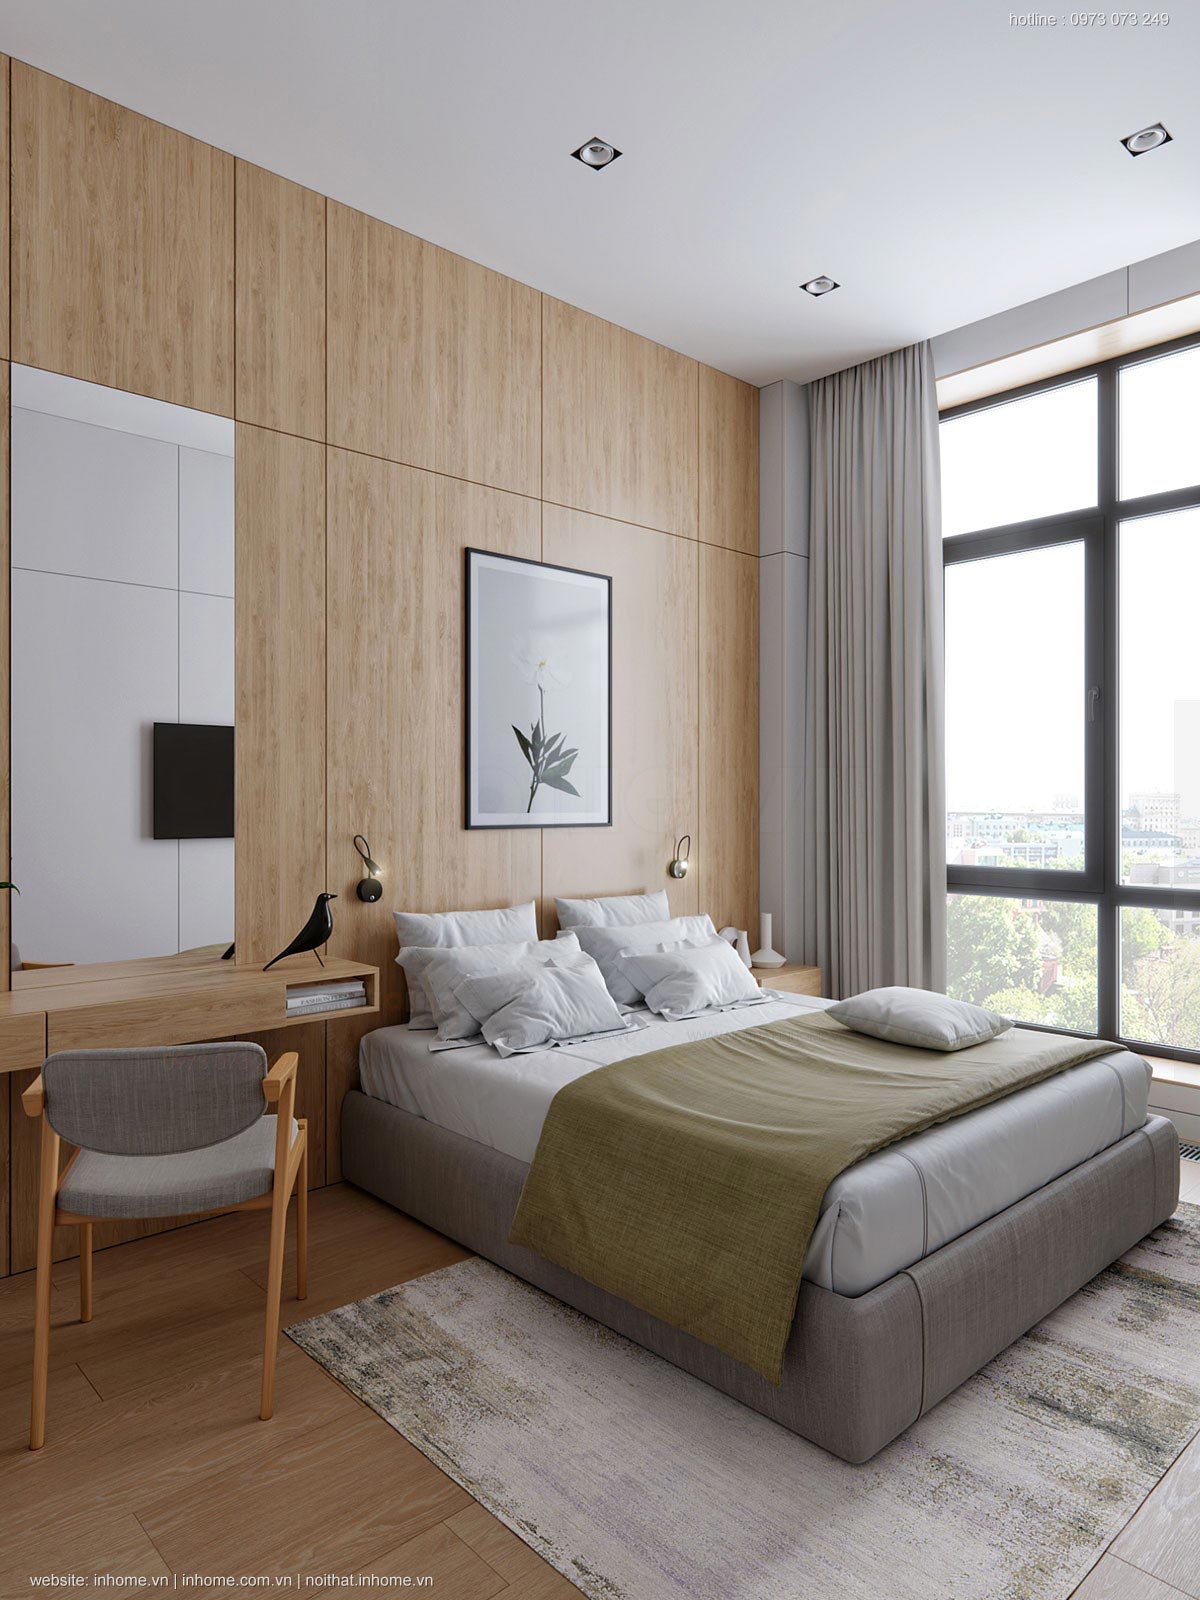 Giới thiệu phong cách nội thất tối giản của căn chung cư Hà Đông - Hà Nội 07